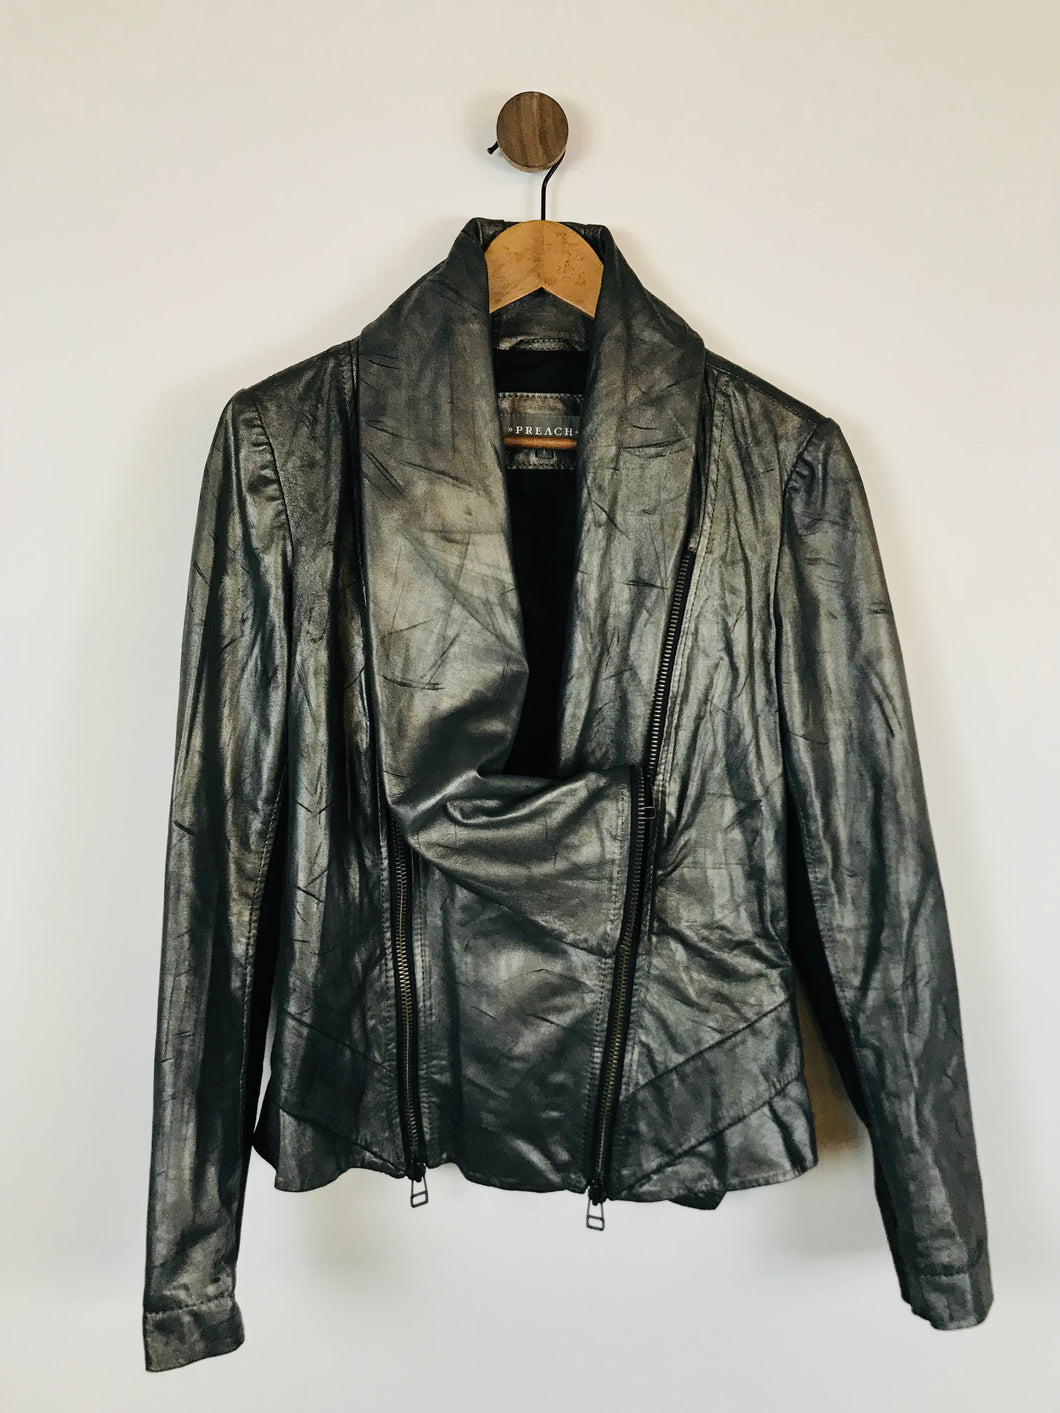 Preach Women's Leather Biker Jacket | L UK14 | Grey